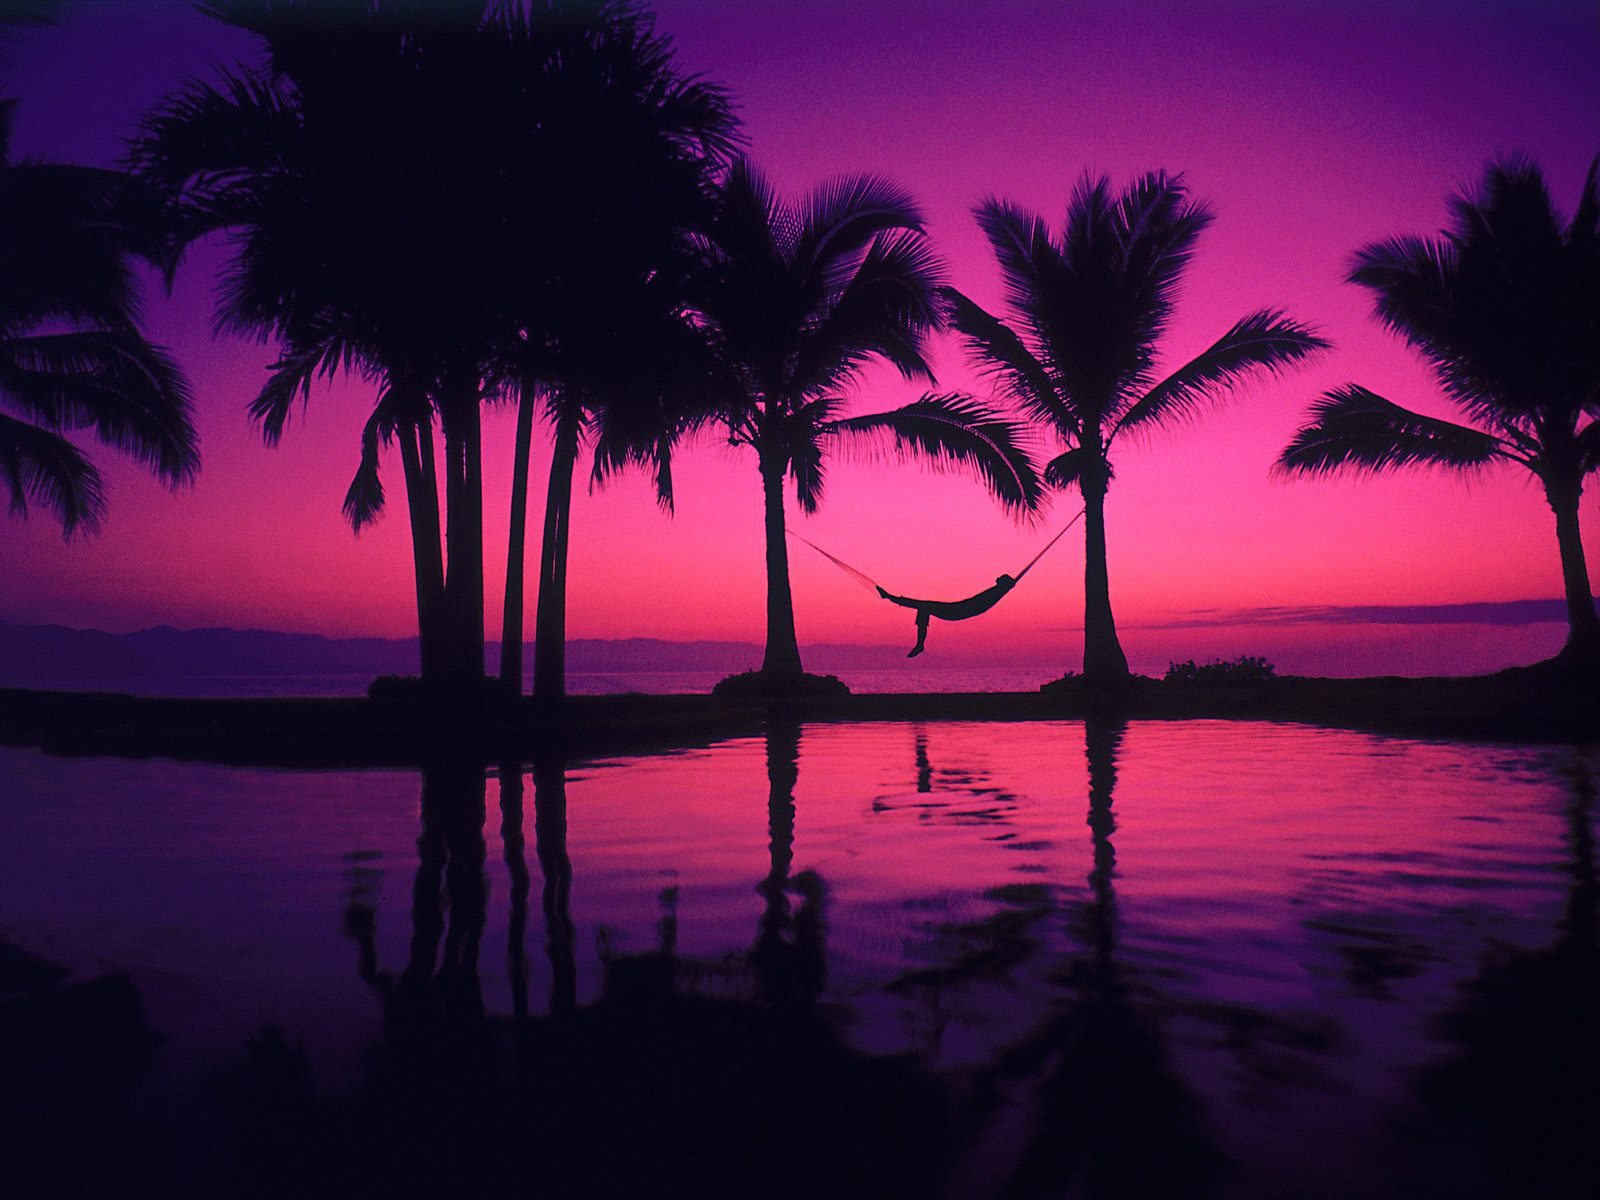 http://3.bp.blogspot.com/-DD1BDOf56gI/TtuqHohNDLI/AAAAAAAAA9k/xE6wUq0EeyU/s1600/6478_beach_hd_wallpapers_purple_sunset_sea.jpg